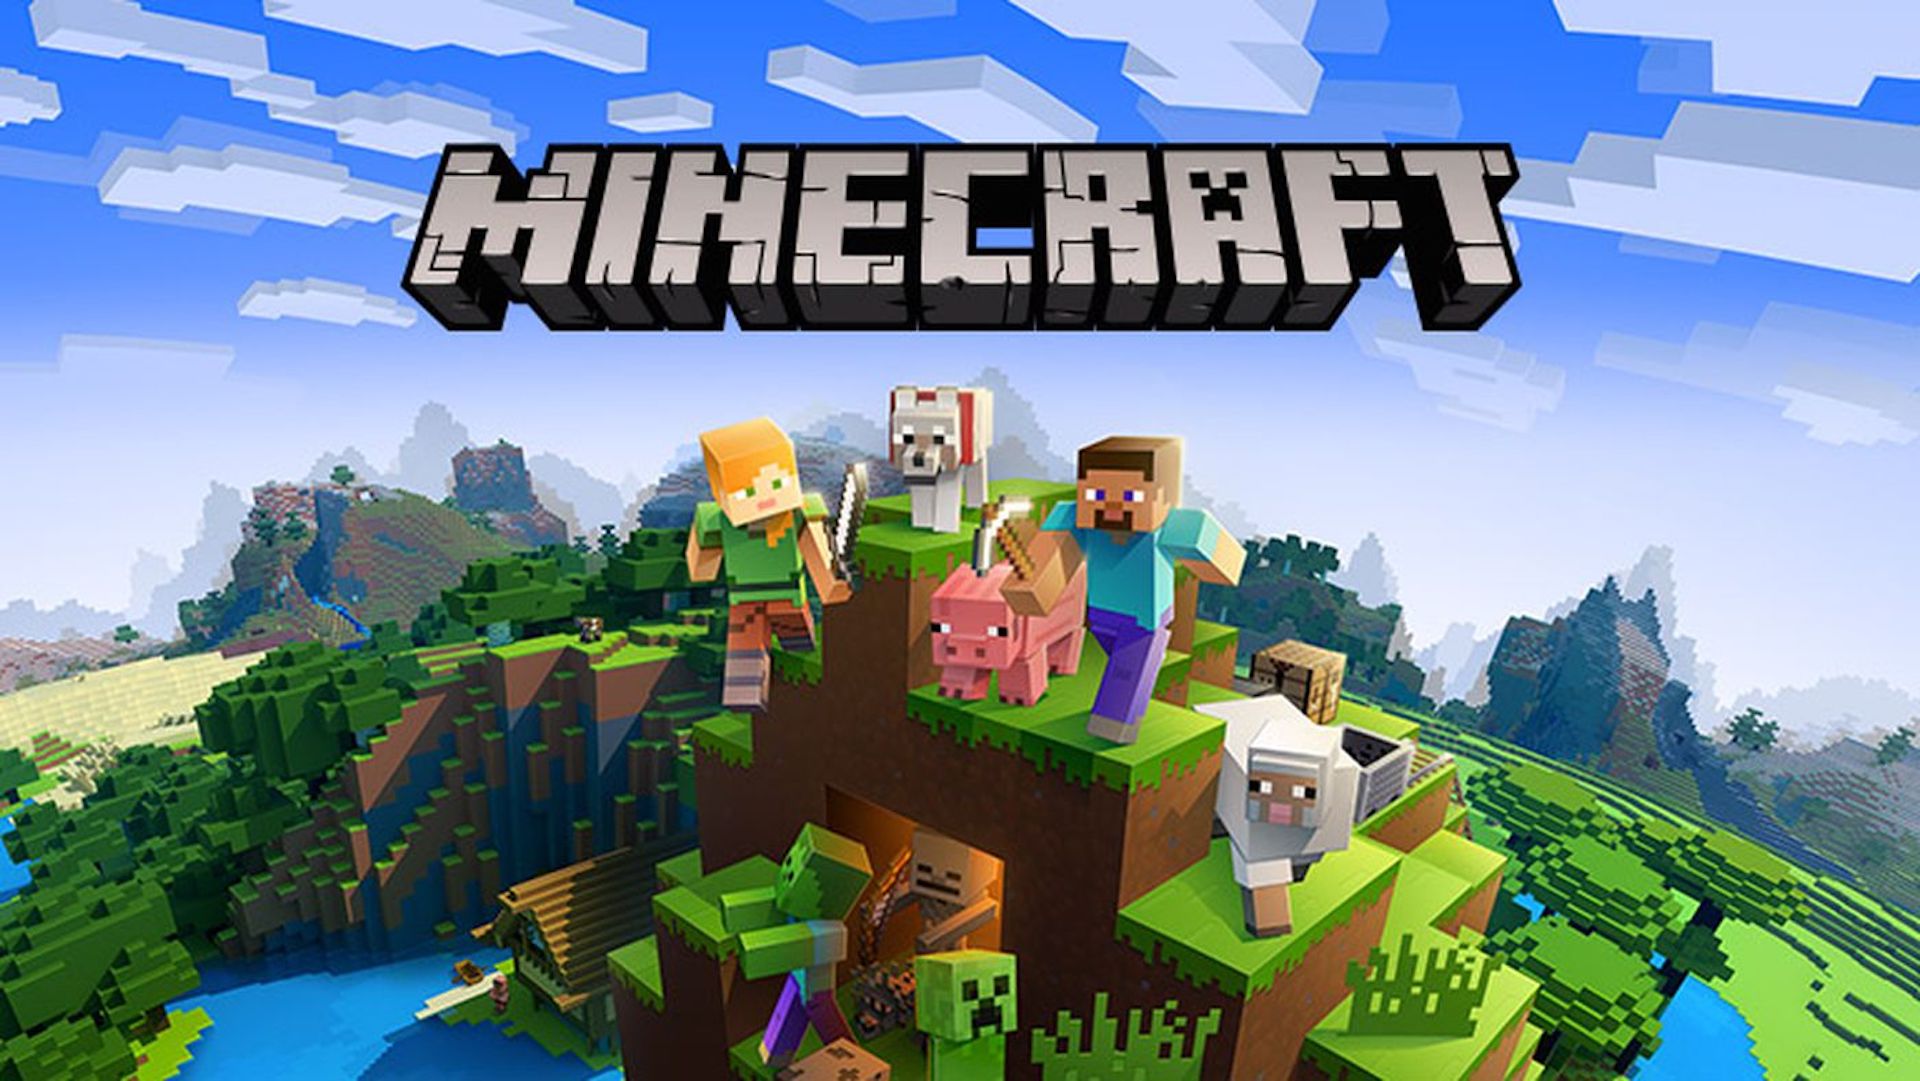 Gerücht: Minecraft kommt vielleicht auf PlayStation 5